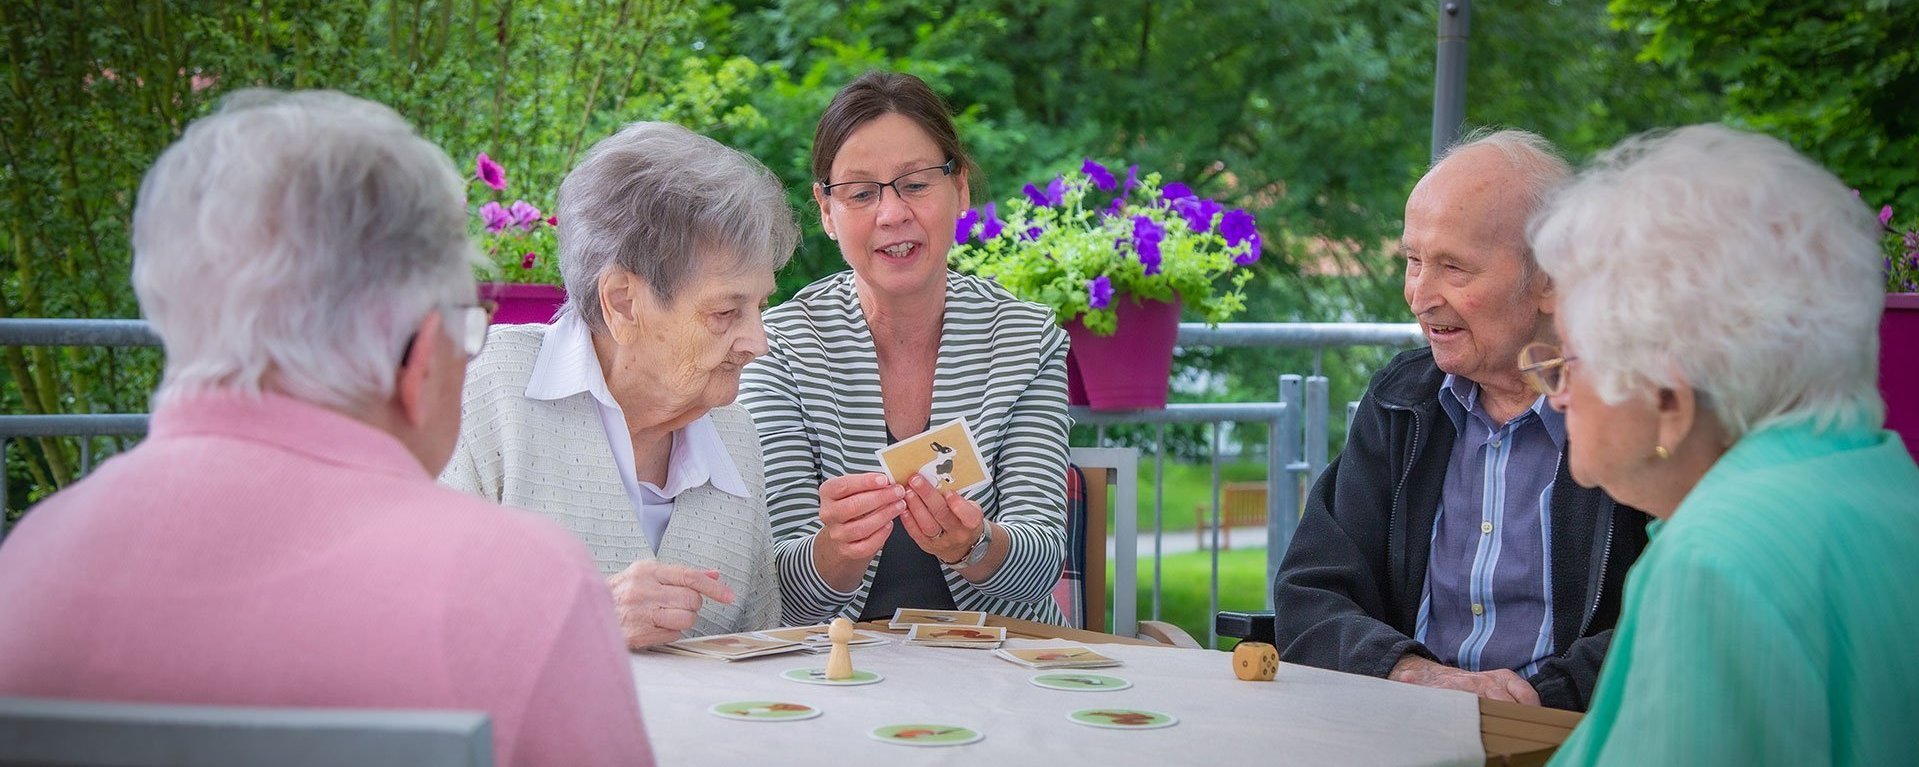 Eine Gruppe von fünf Personen sitzt um einem Tisch und spielt Karten